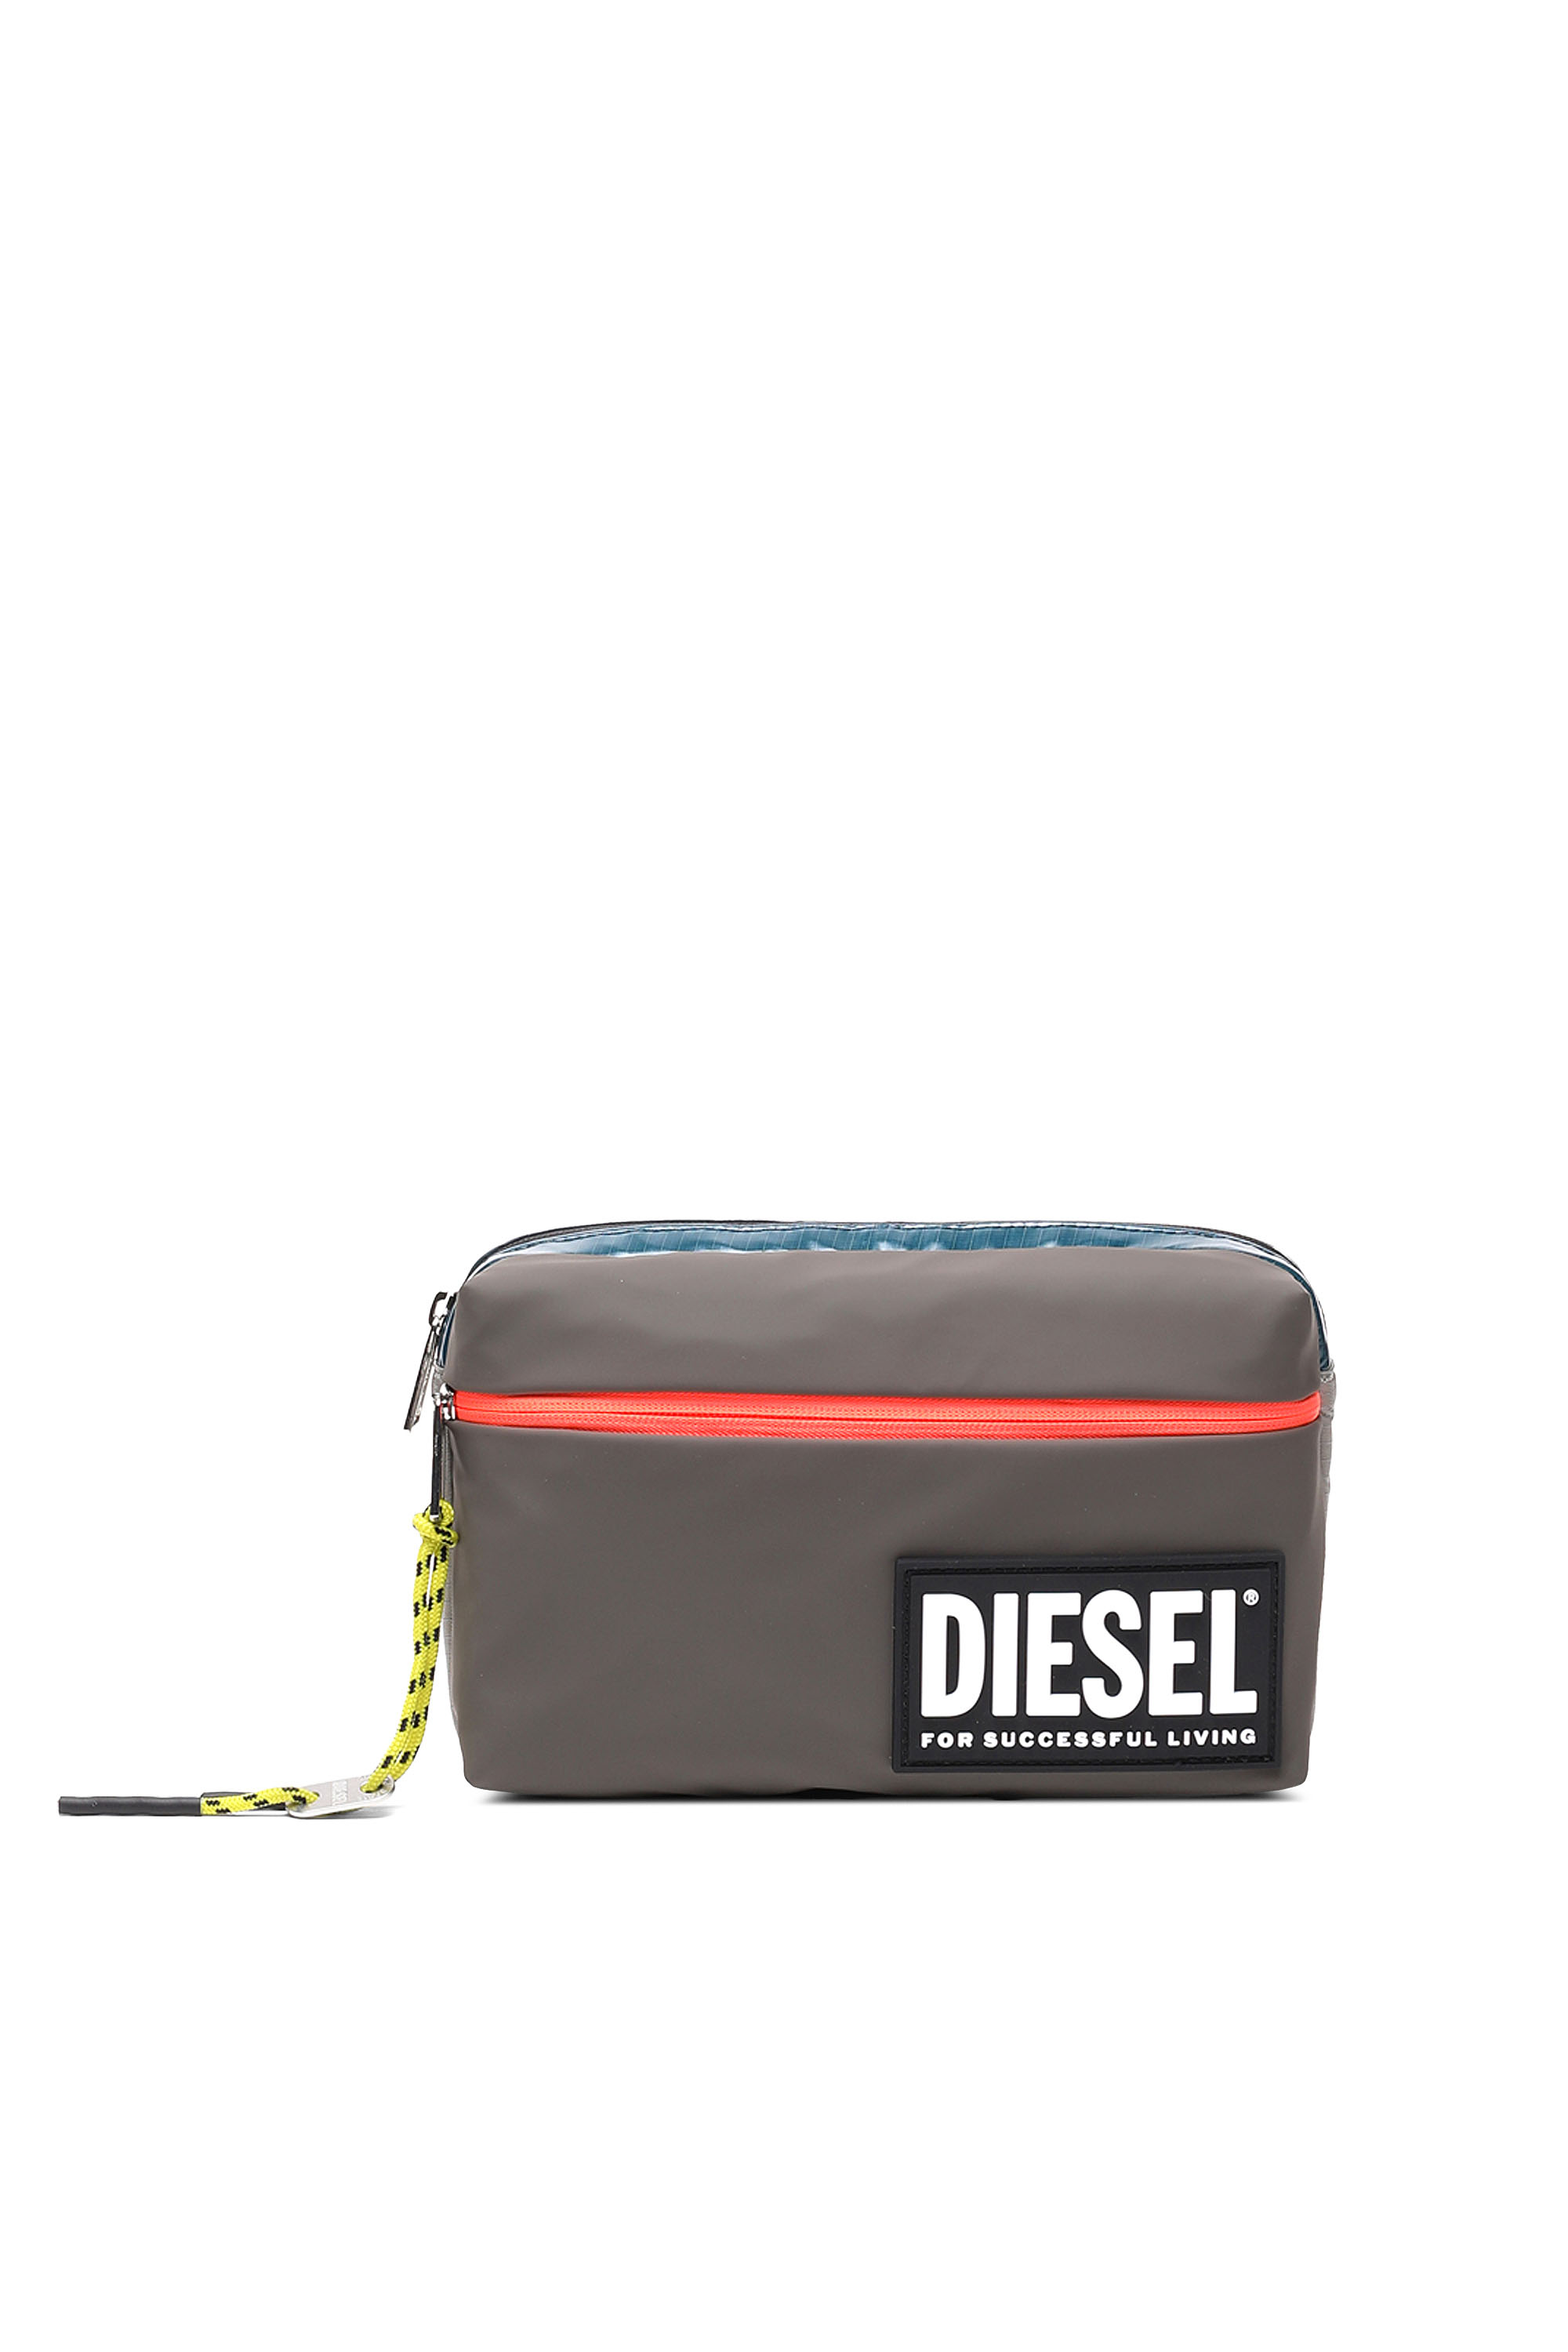 Diesel - BELTYO, Brown - Image 1